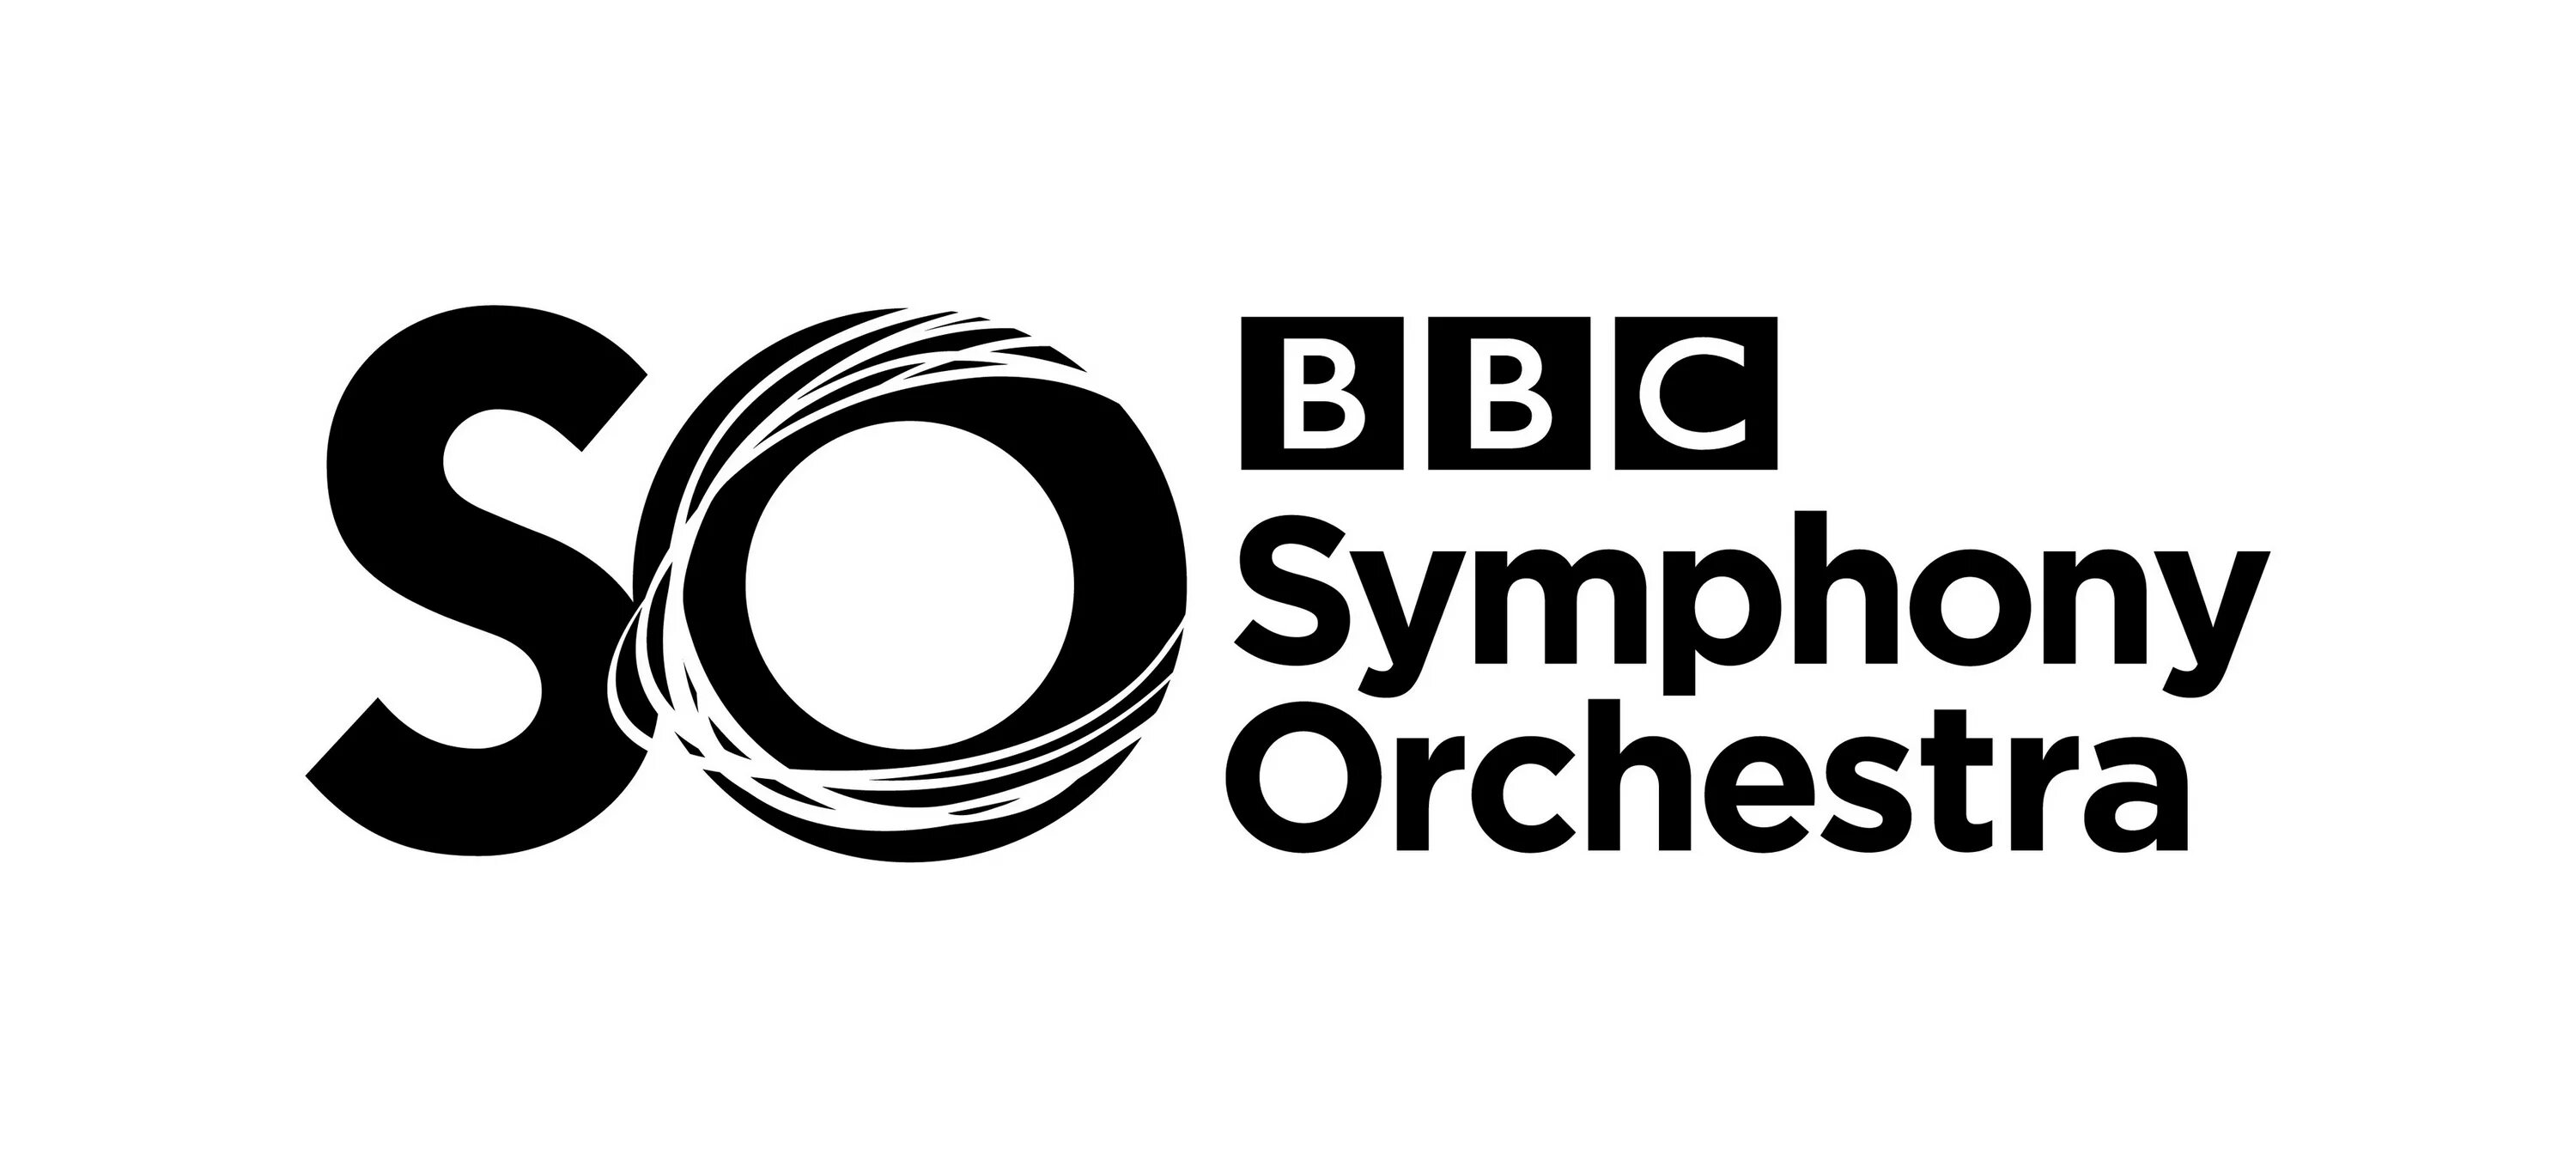 Bbc symphony orchestra. Симфонический оркестр би-би-си лого. Orchestra логотип. Логотип ббс. Логотип so.